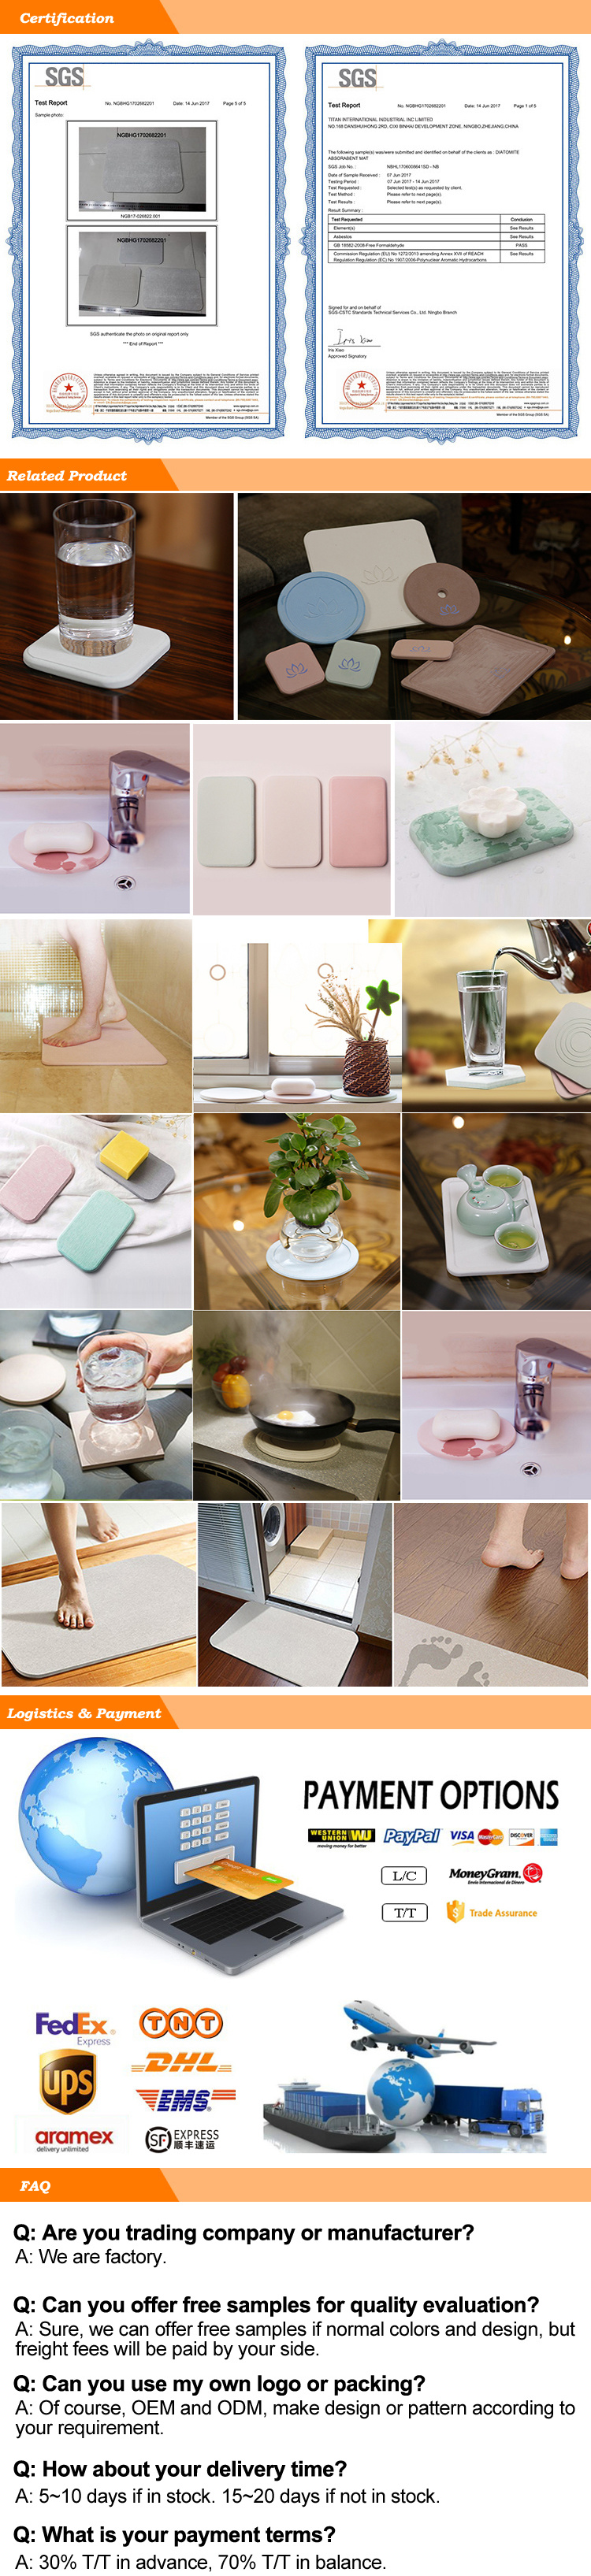 2018 Japan Diatomite Bathroom Mat